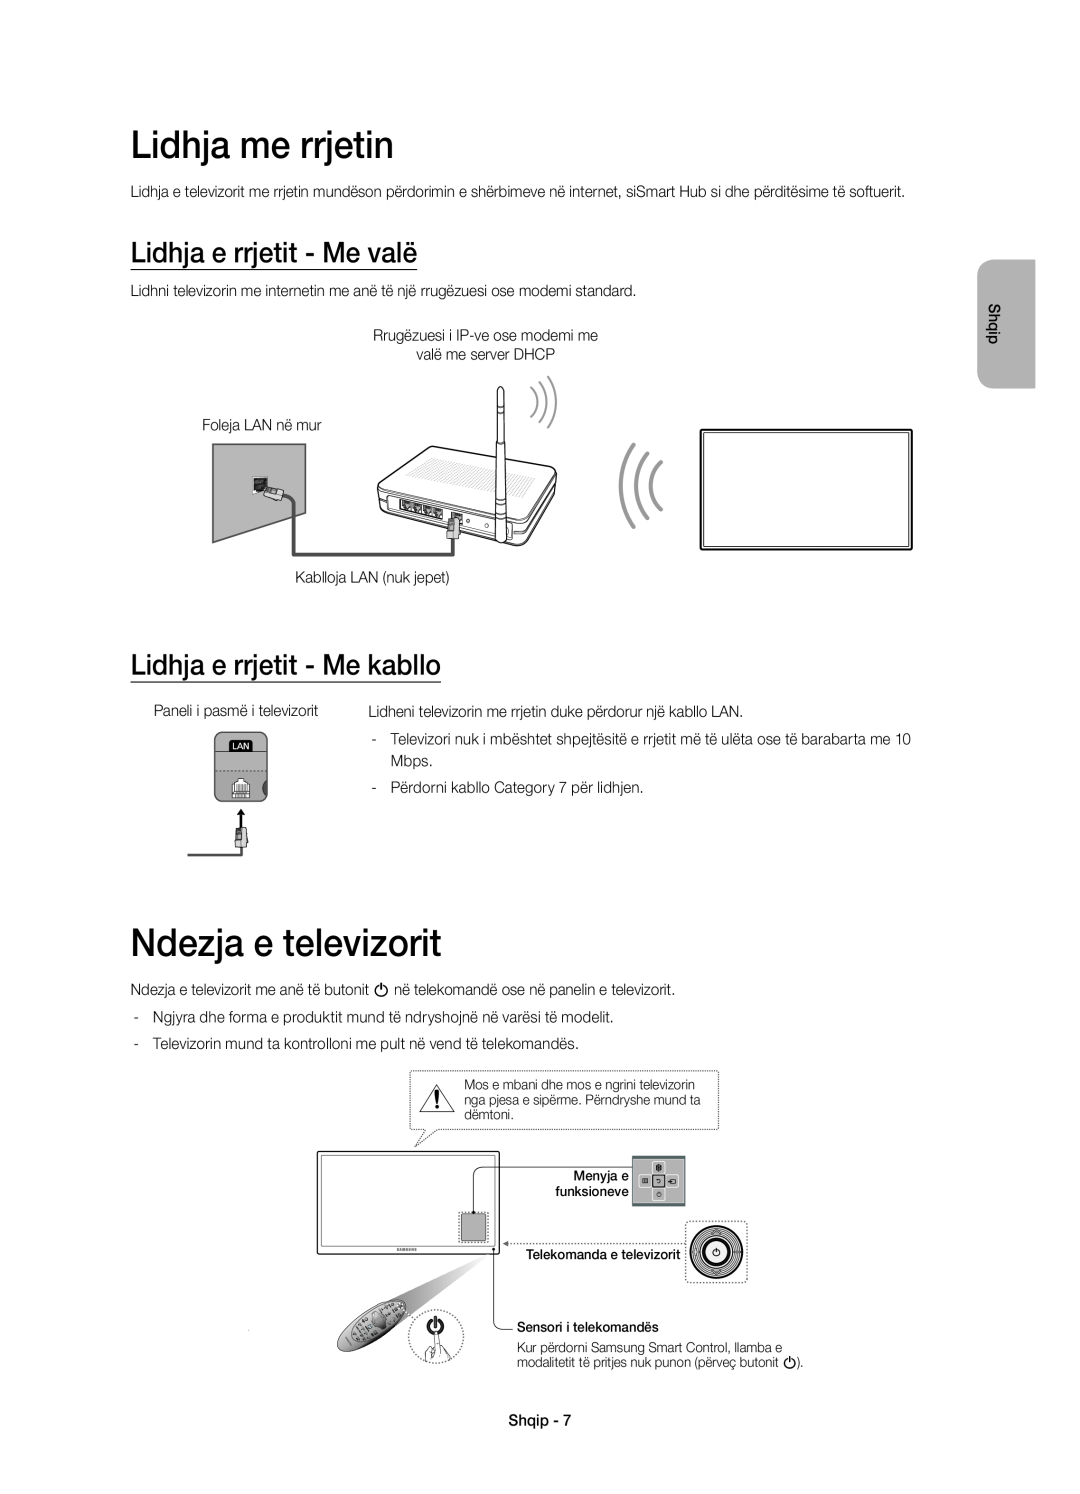 Samsung UE48H6410SUXXH Lidhja me rrjetin, Ndezja e televizorit, Lidhja e rrjetit - Me valë, Lidhja e rrjetit - Me kabllo 